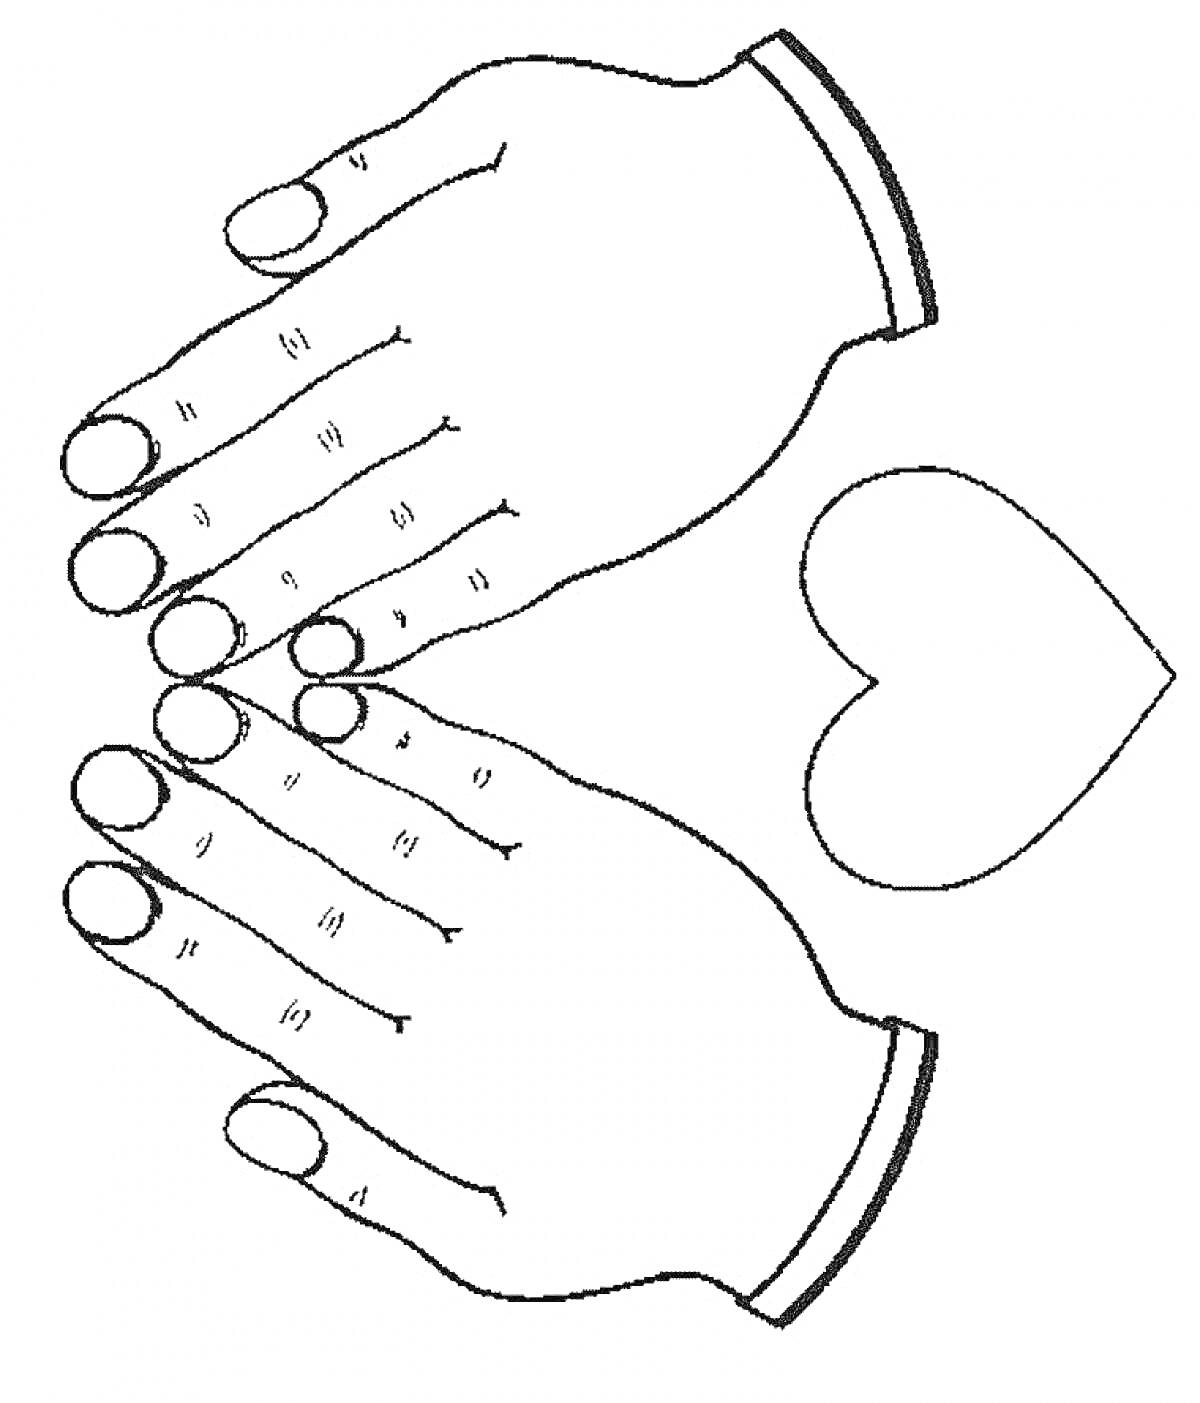 Раскраска Раскраска с изображением двух ладоней, каждой с буквами на пальцах, и сердцем